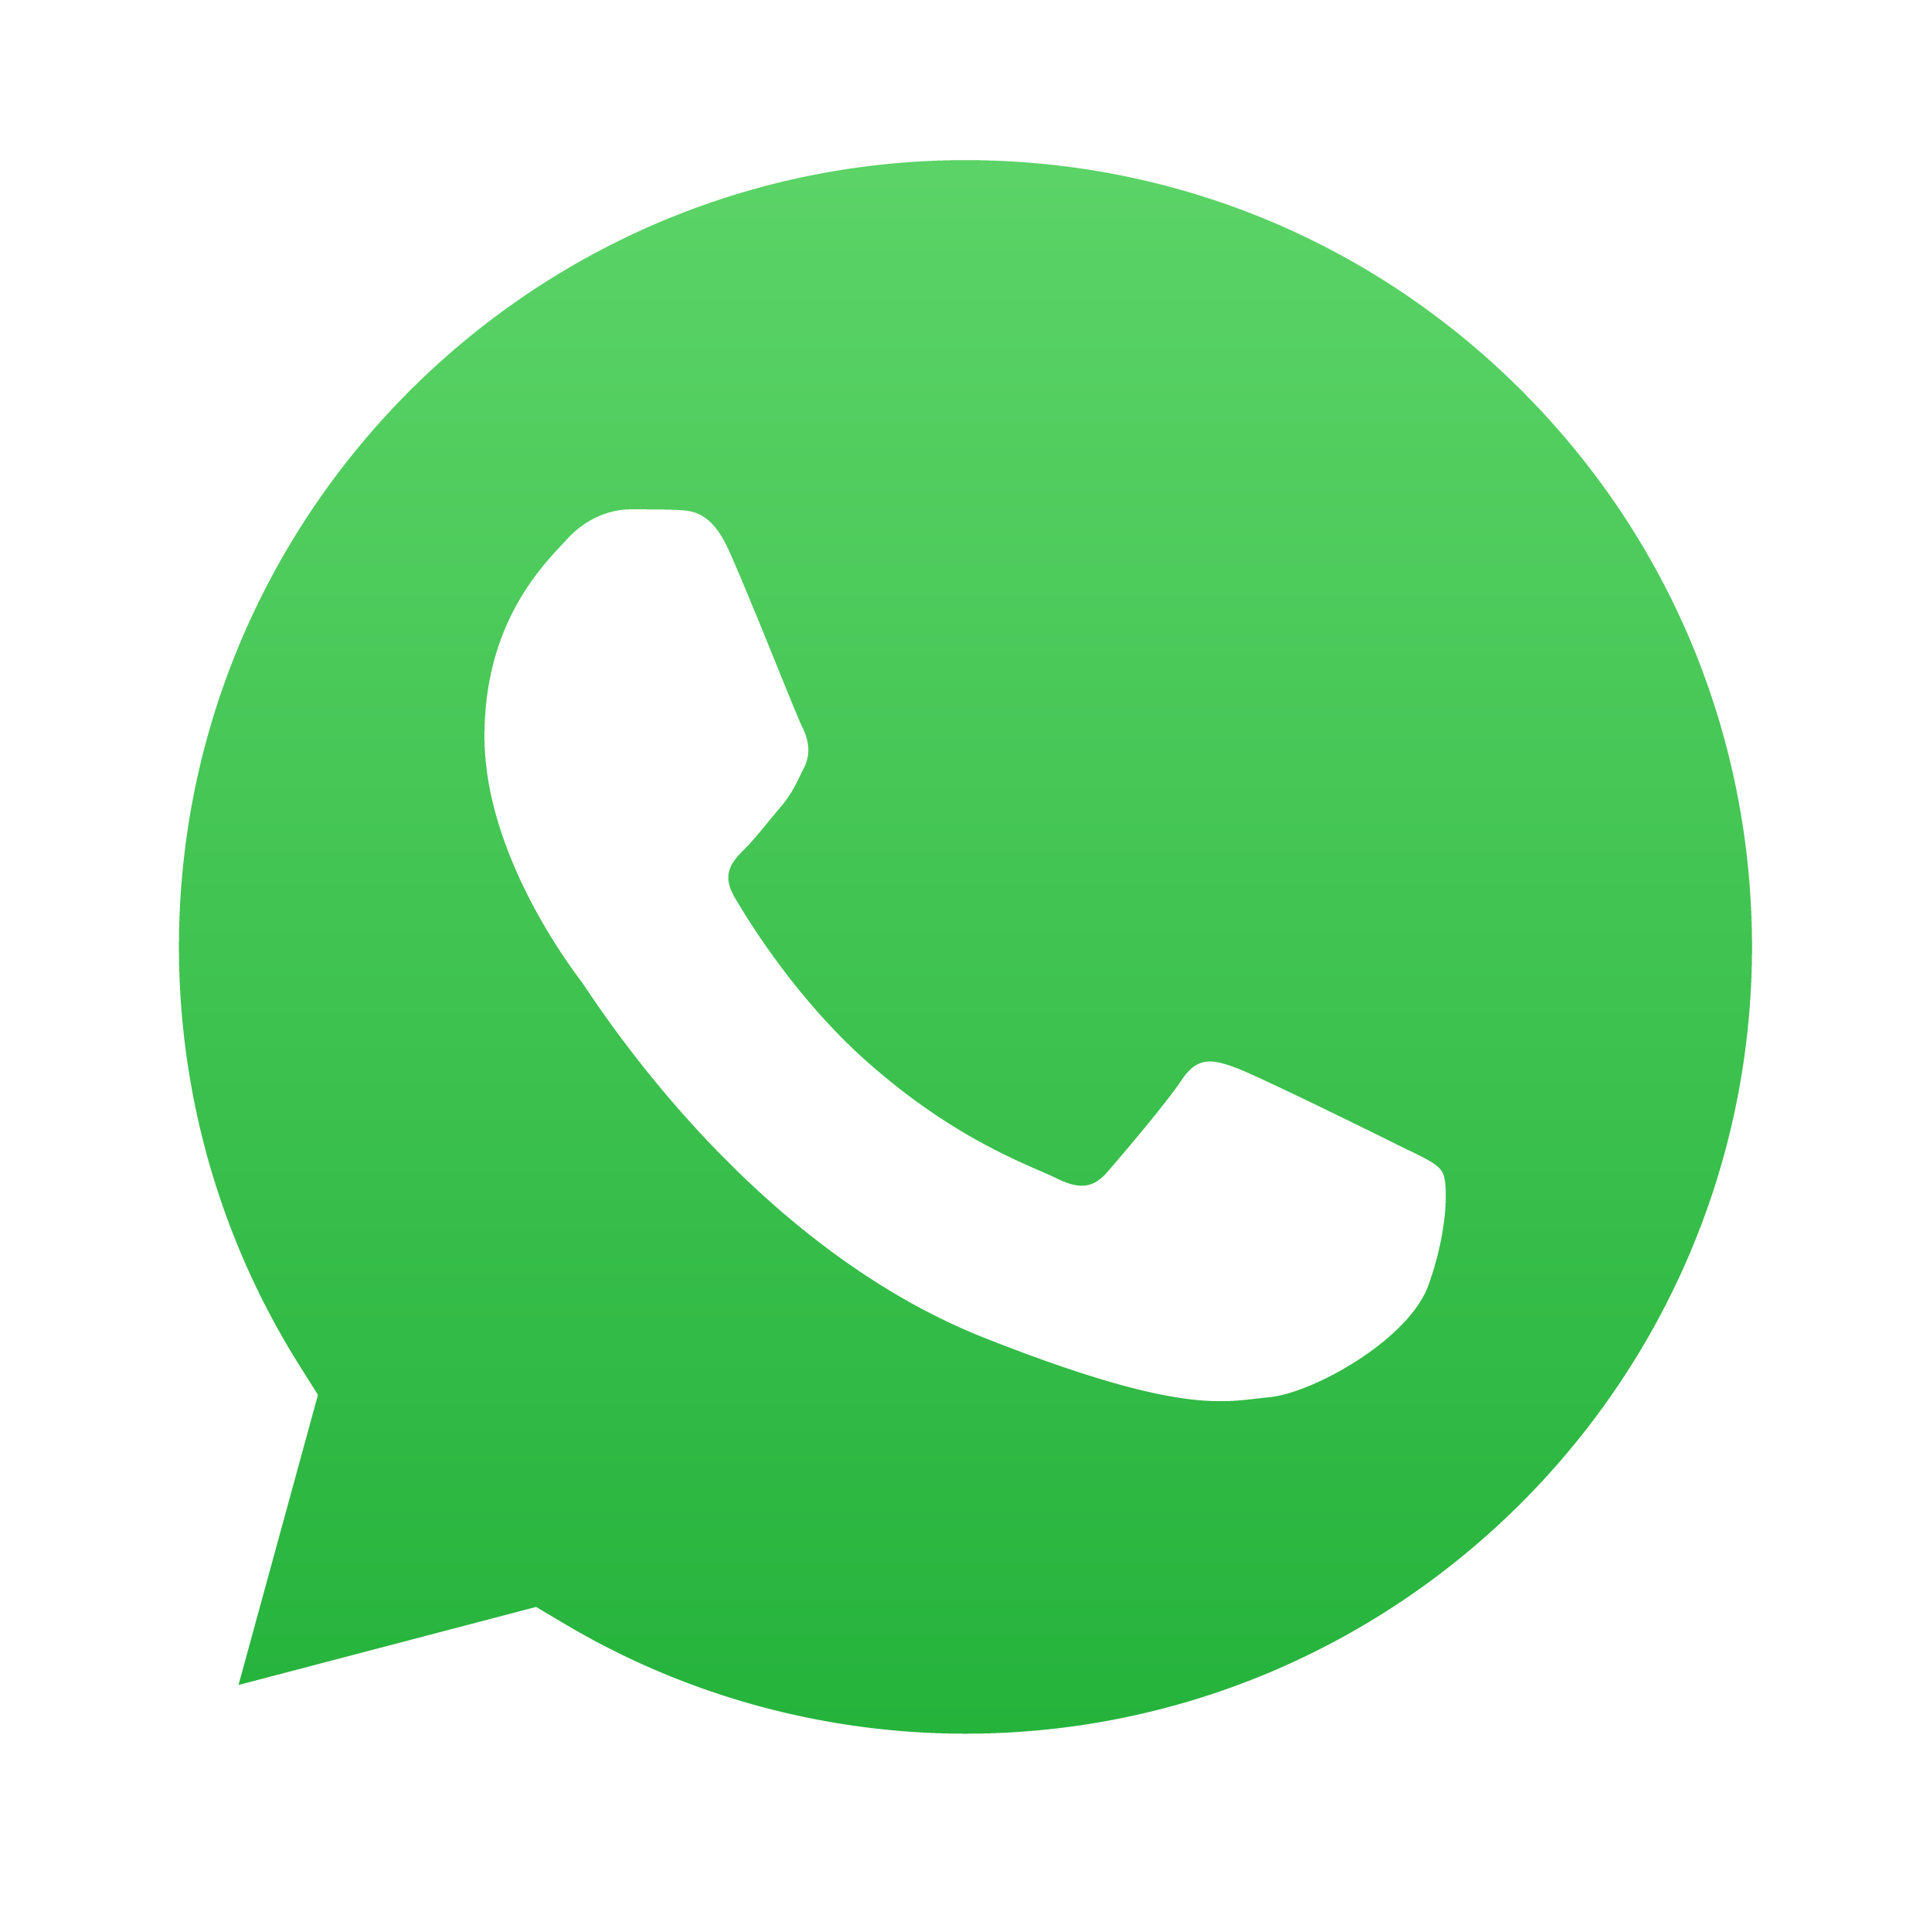 Entre em contato pelo whatsapp